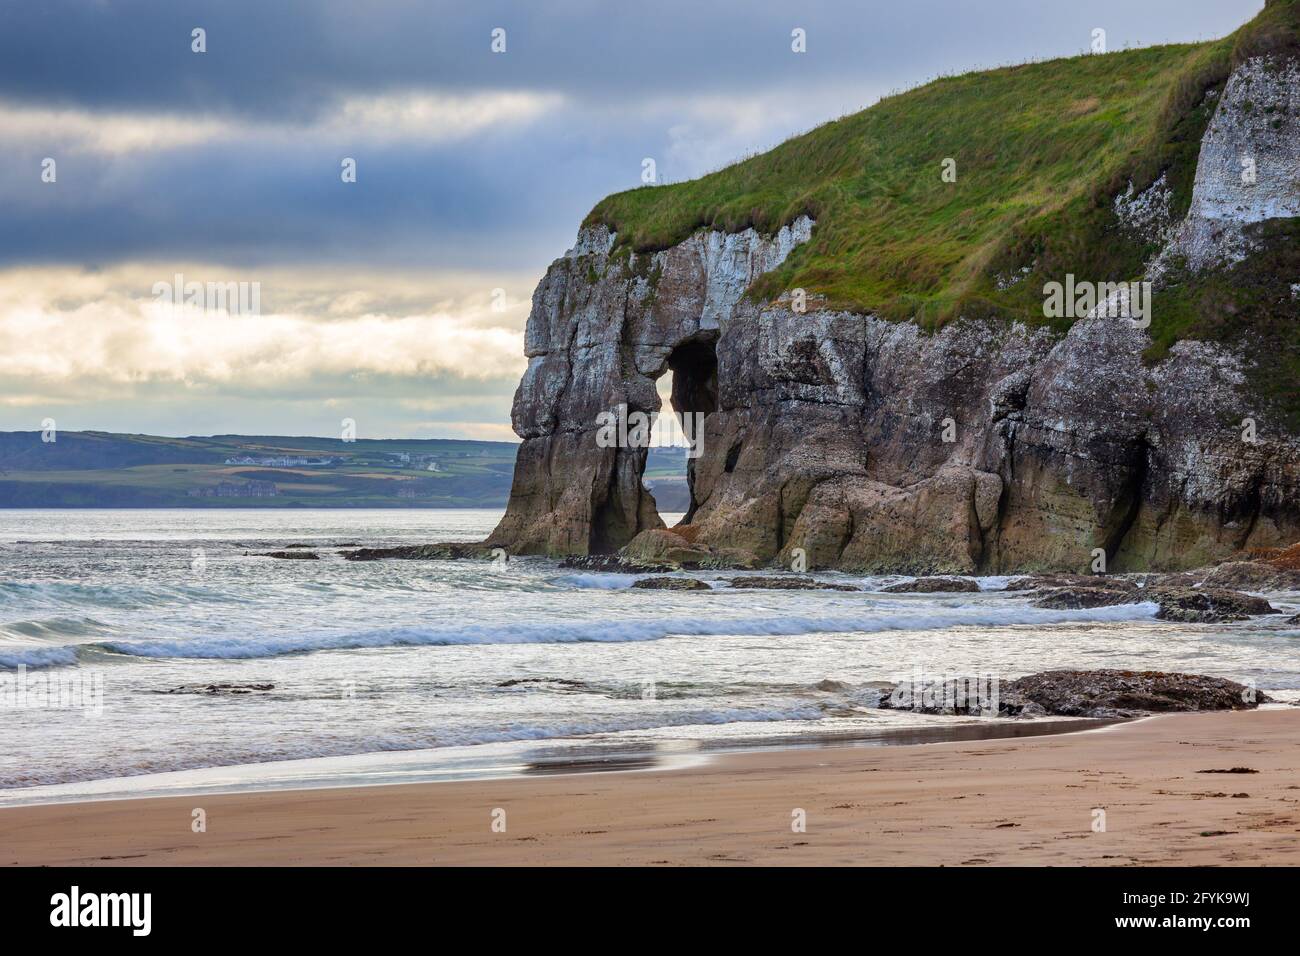 Rock Arch, conosciuto come Elephant Rock a Whiterocks Beach, situato appena fuori dalla strada costiera di Causeway sulla costa nord dell'Irlanda del Nord. Foto Stock